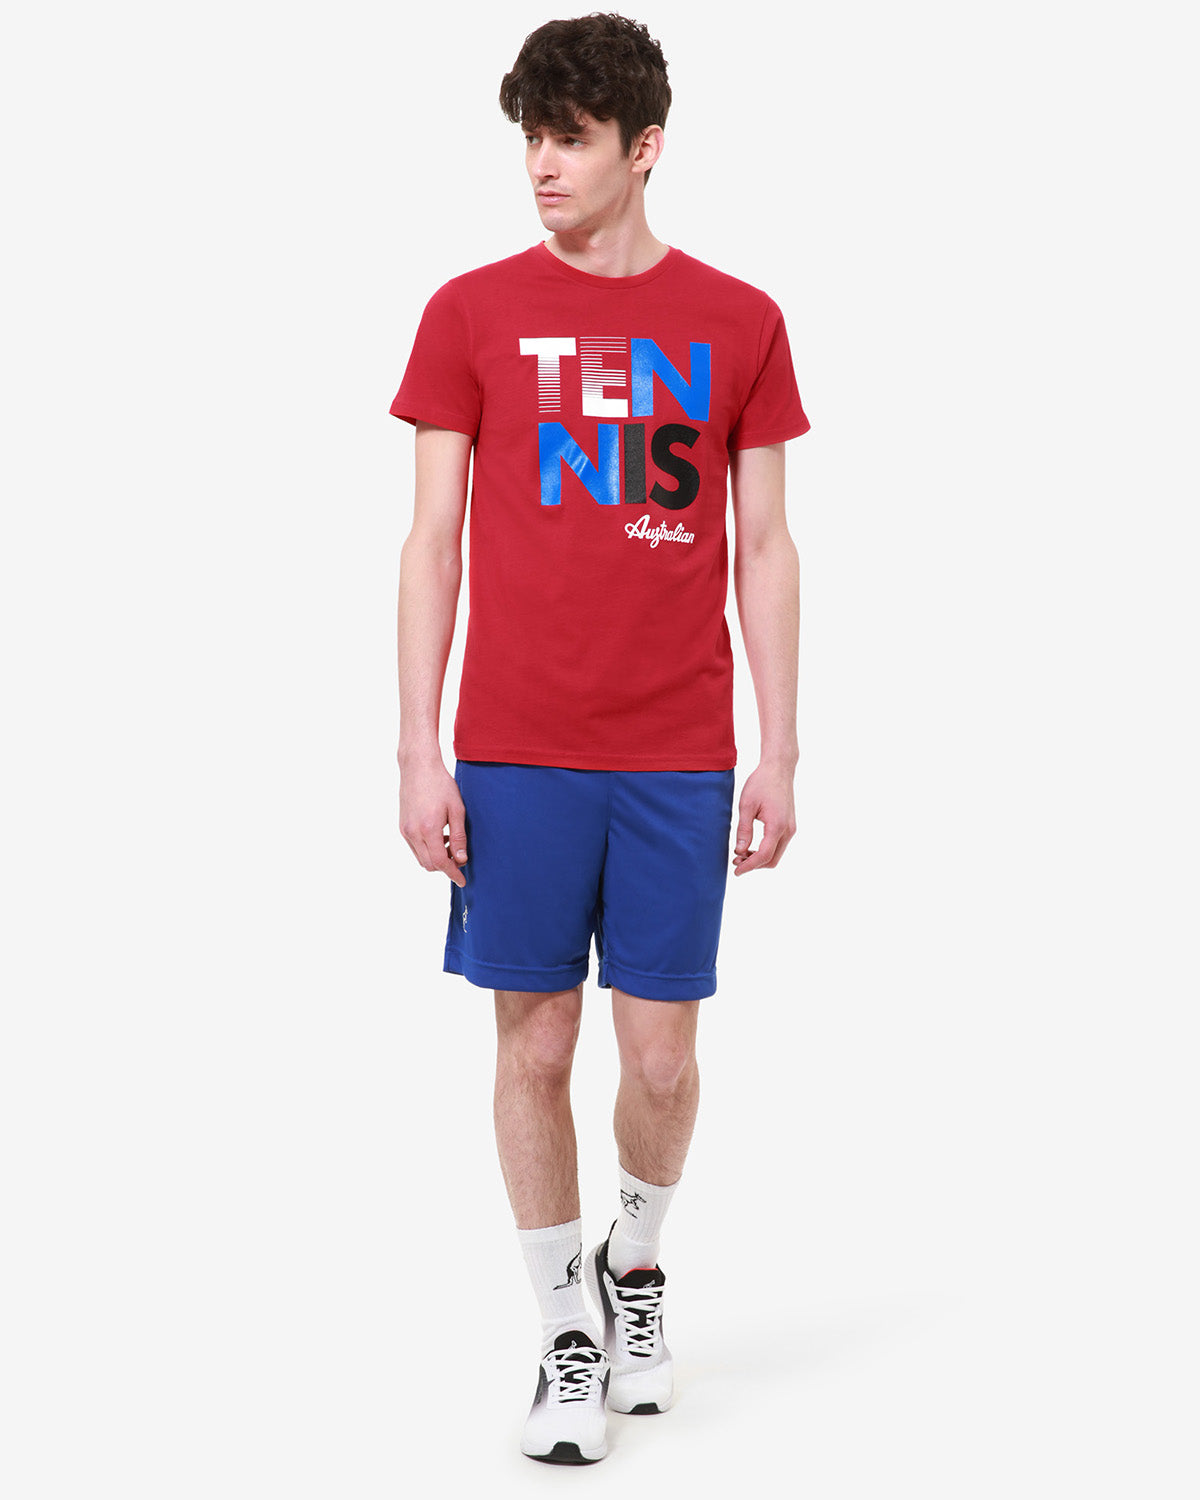 Tennis T-Shirt: Australian Tennis